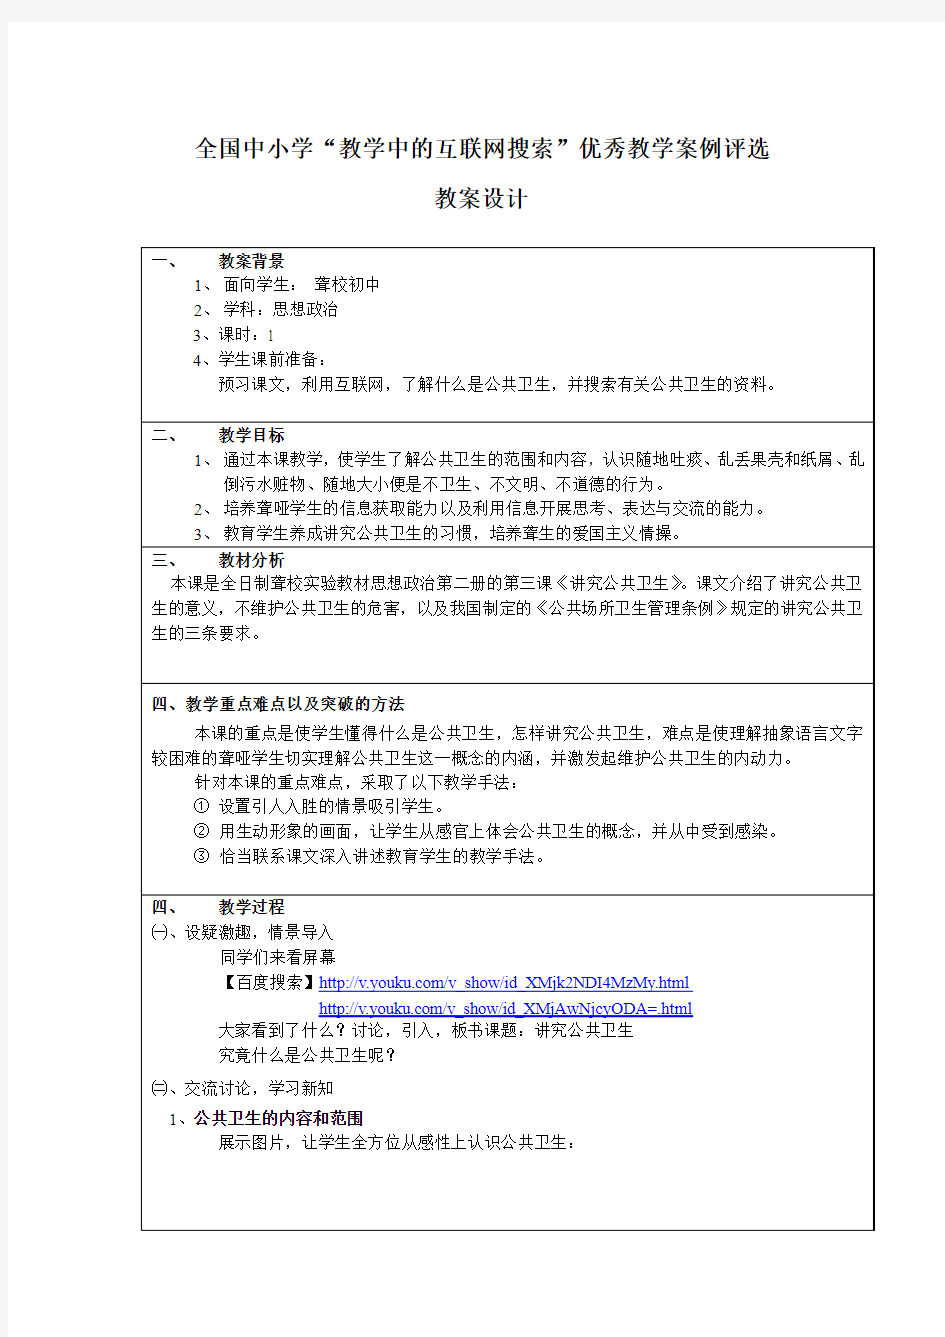 杨爱梅——互联网搜索教学案例